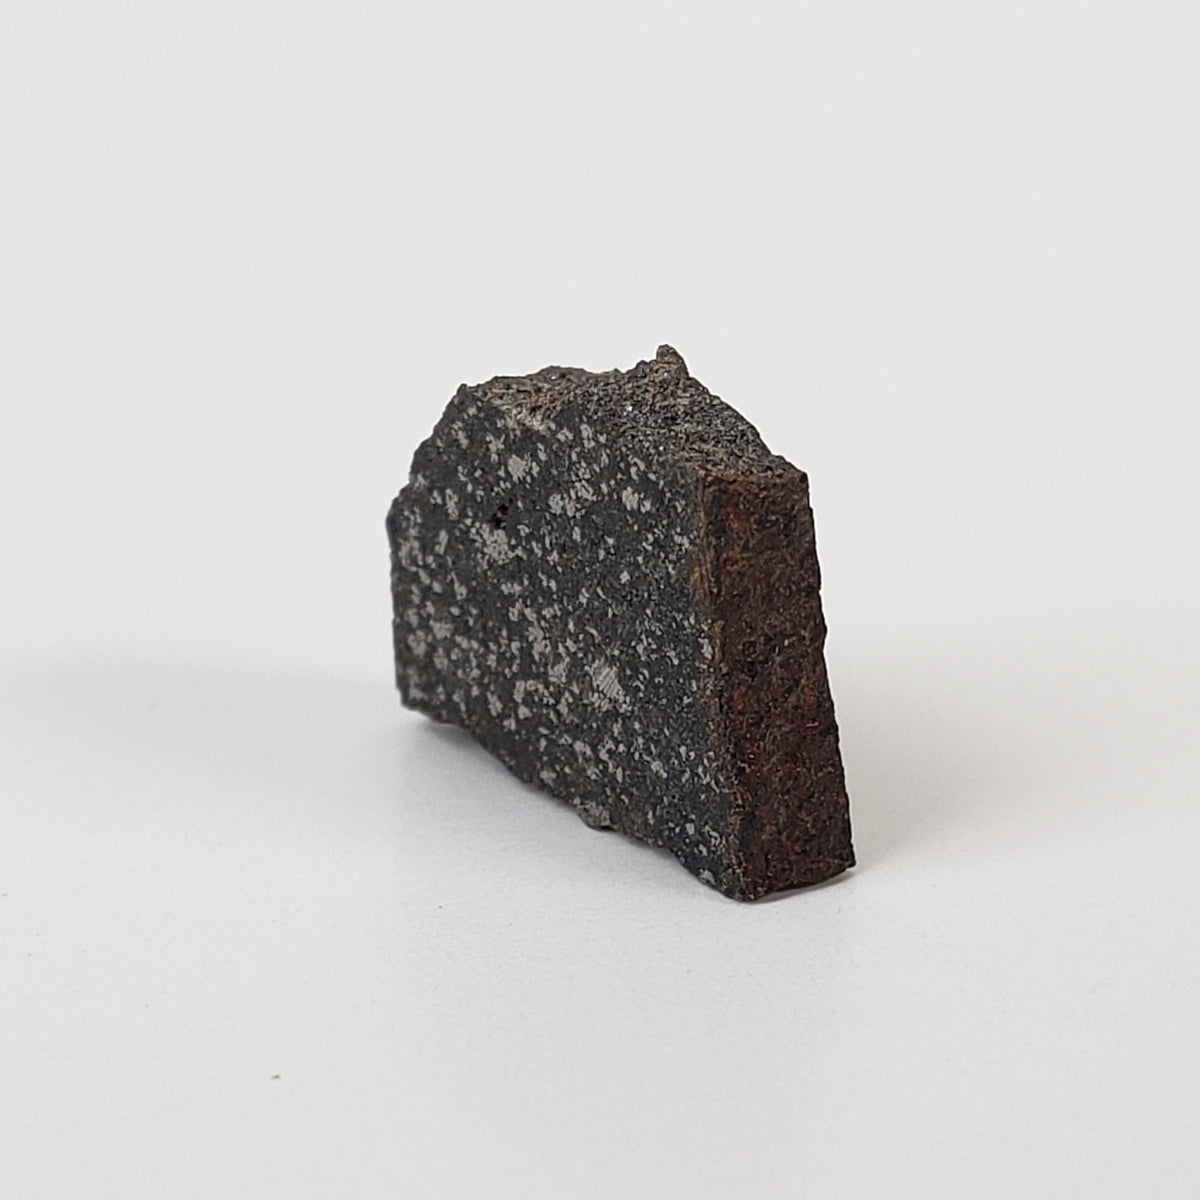 Spade Meteorite | 0.8 Grams | Part Slice | H6 Chondrite | Lamb County, Texas